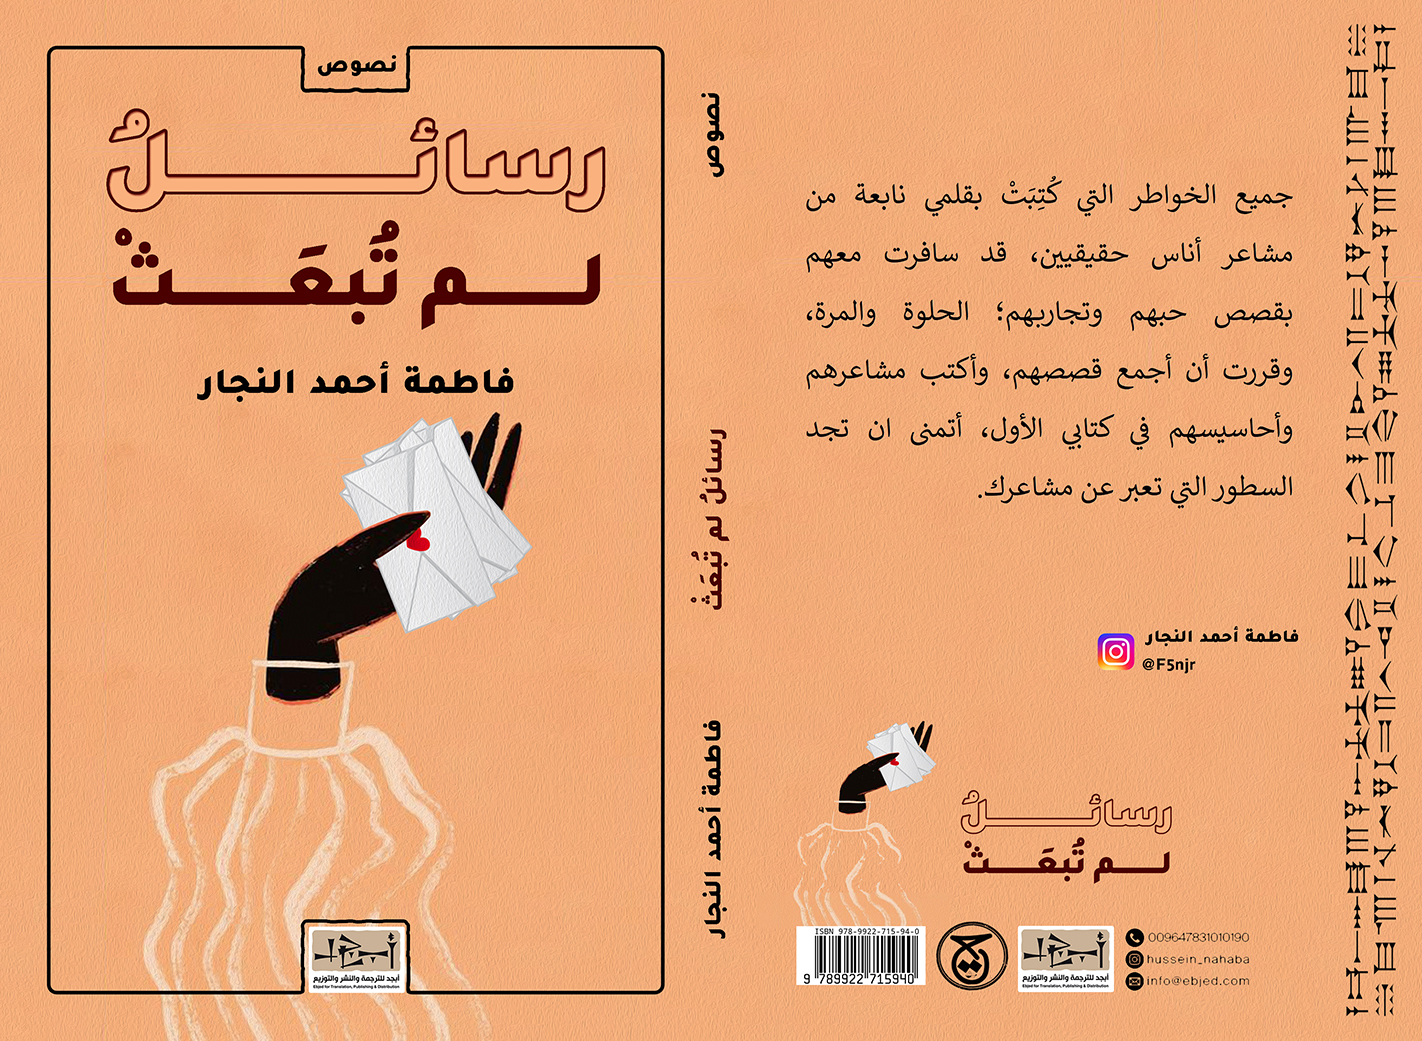 الكتاب: رسائلُ لم تُبعثْ المؤلف:  فاطمة احمد النجار التصنيف: نصوص